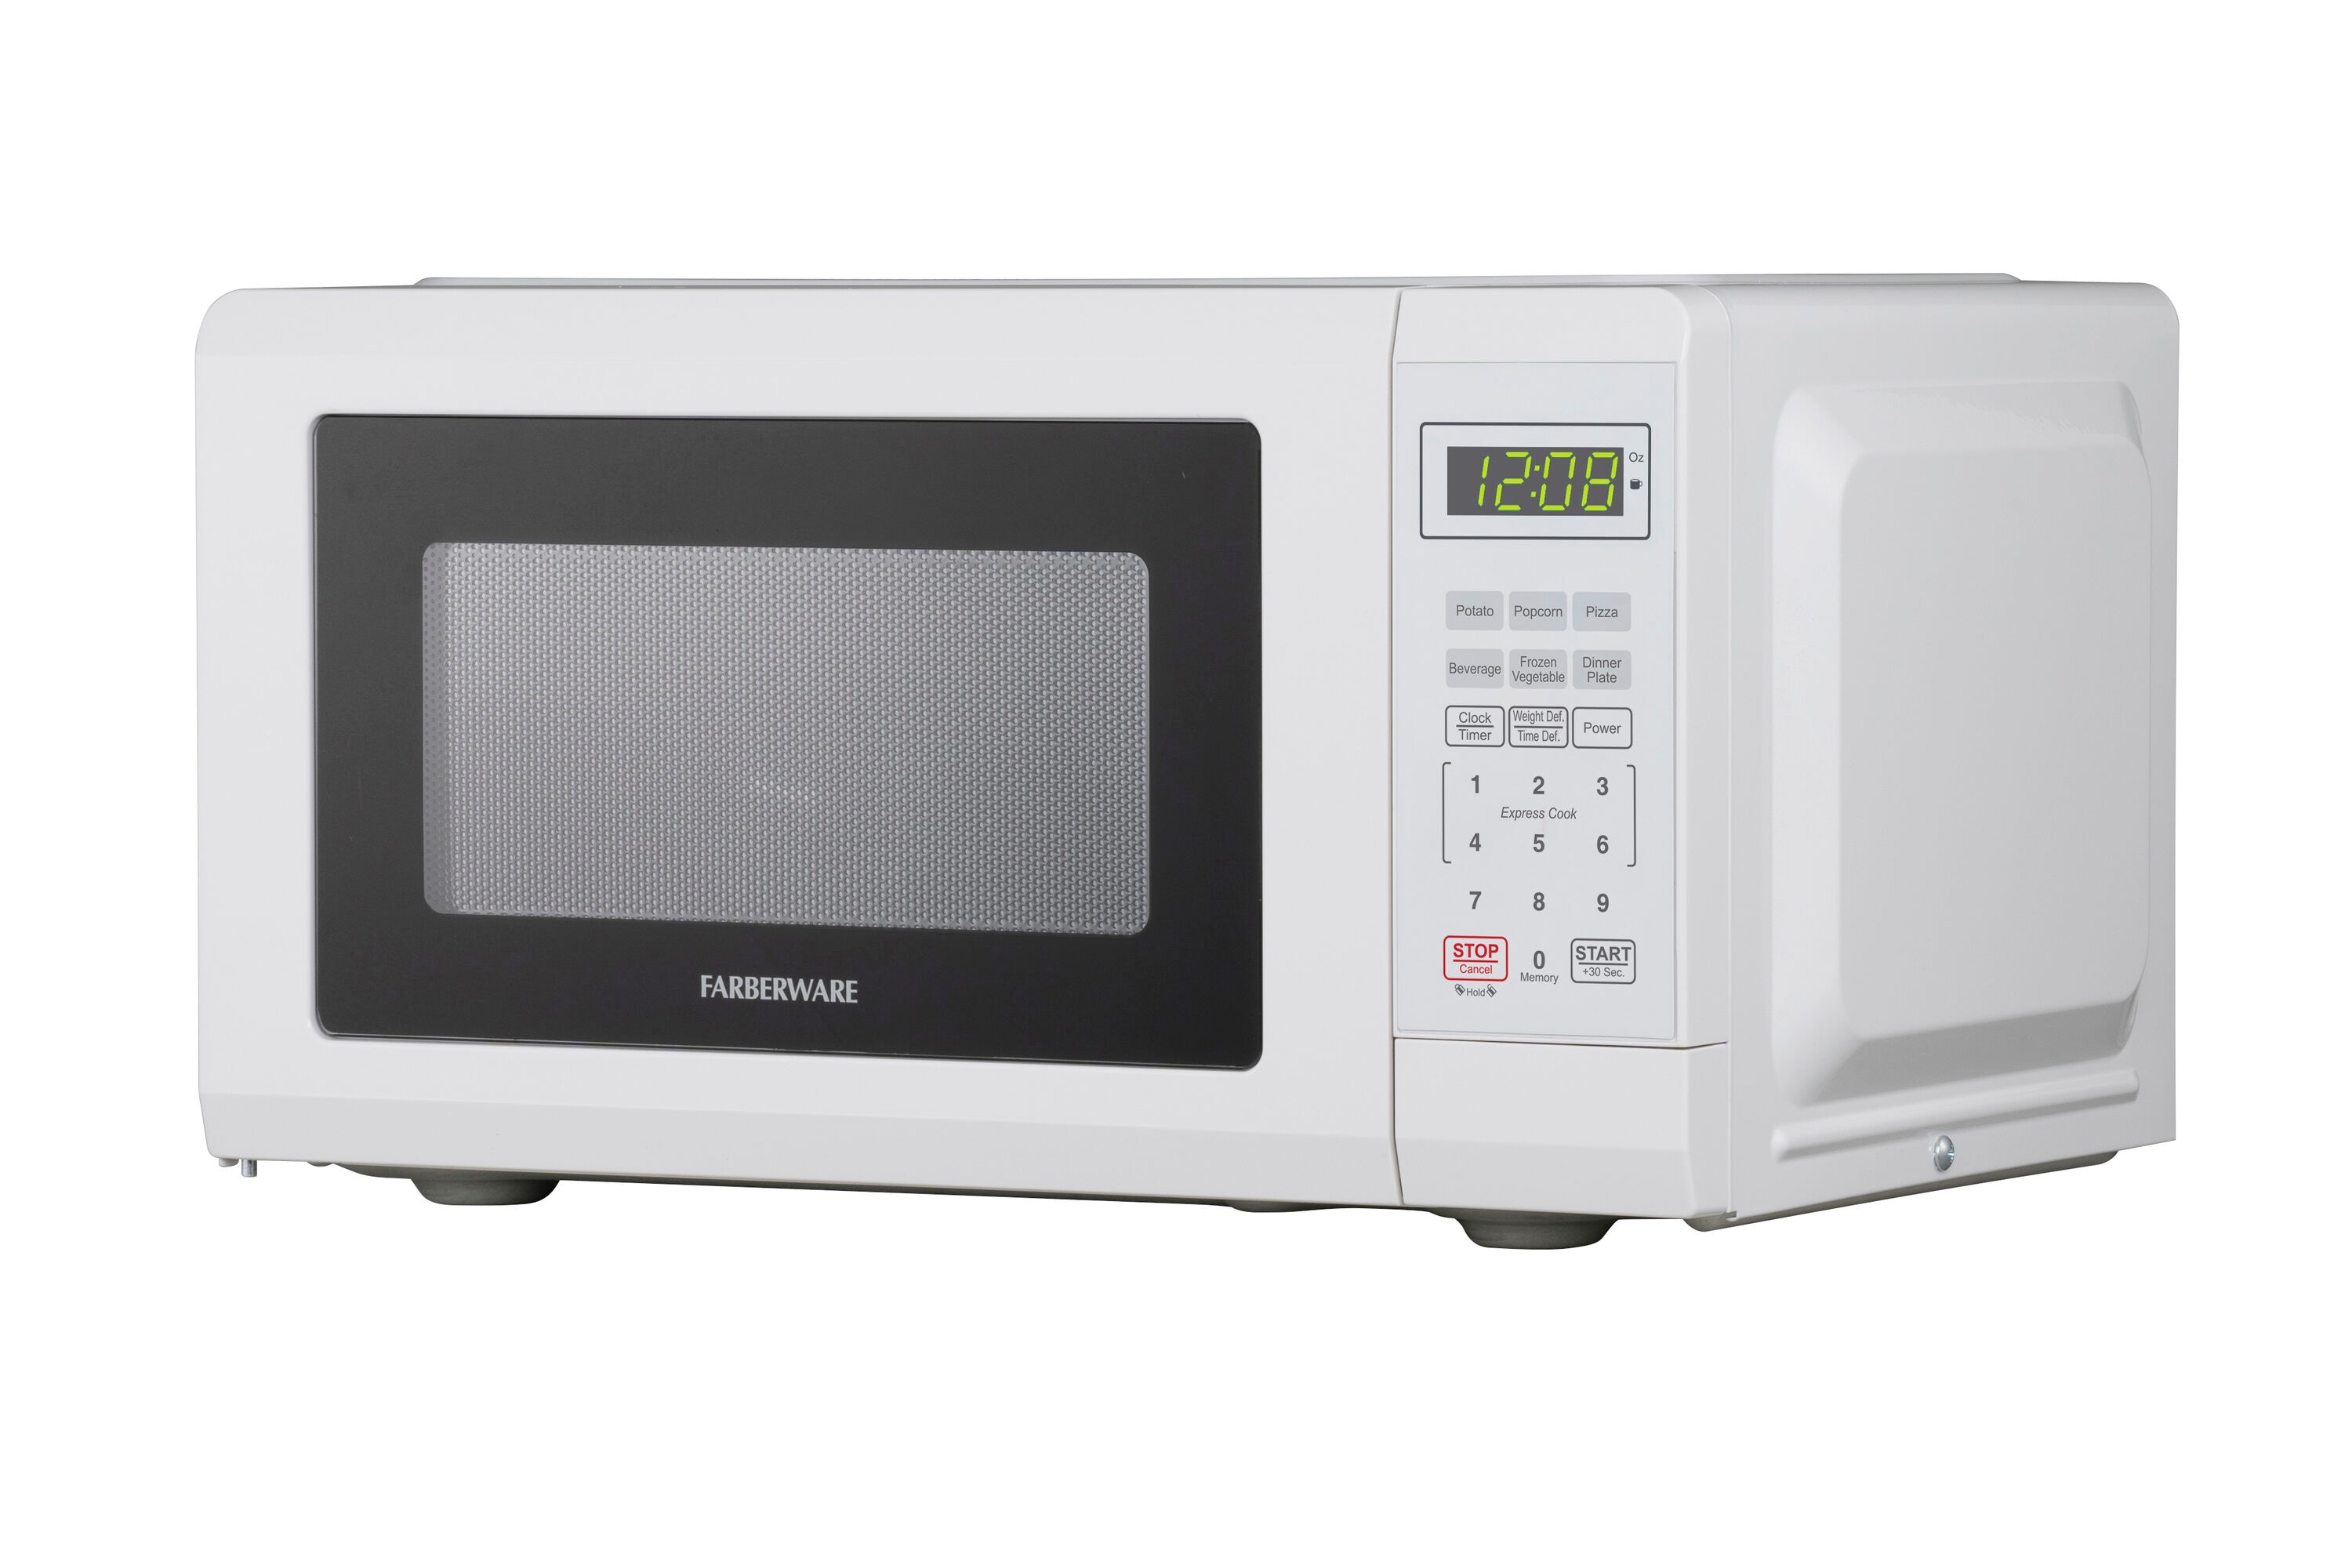  Farberware Countertop Microwave 700 Watts, 0.7 cu ft